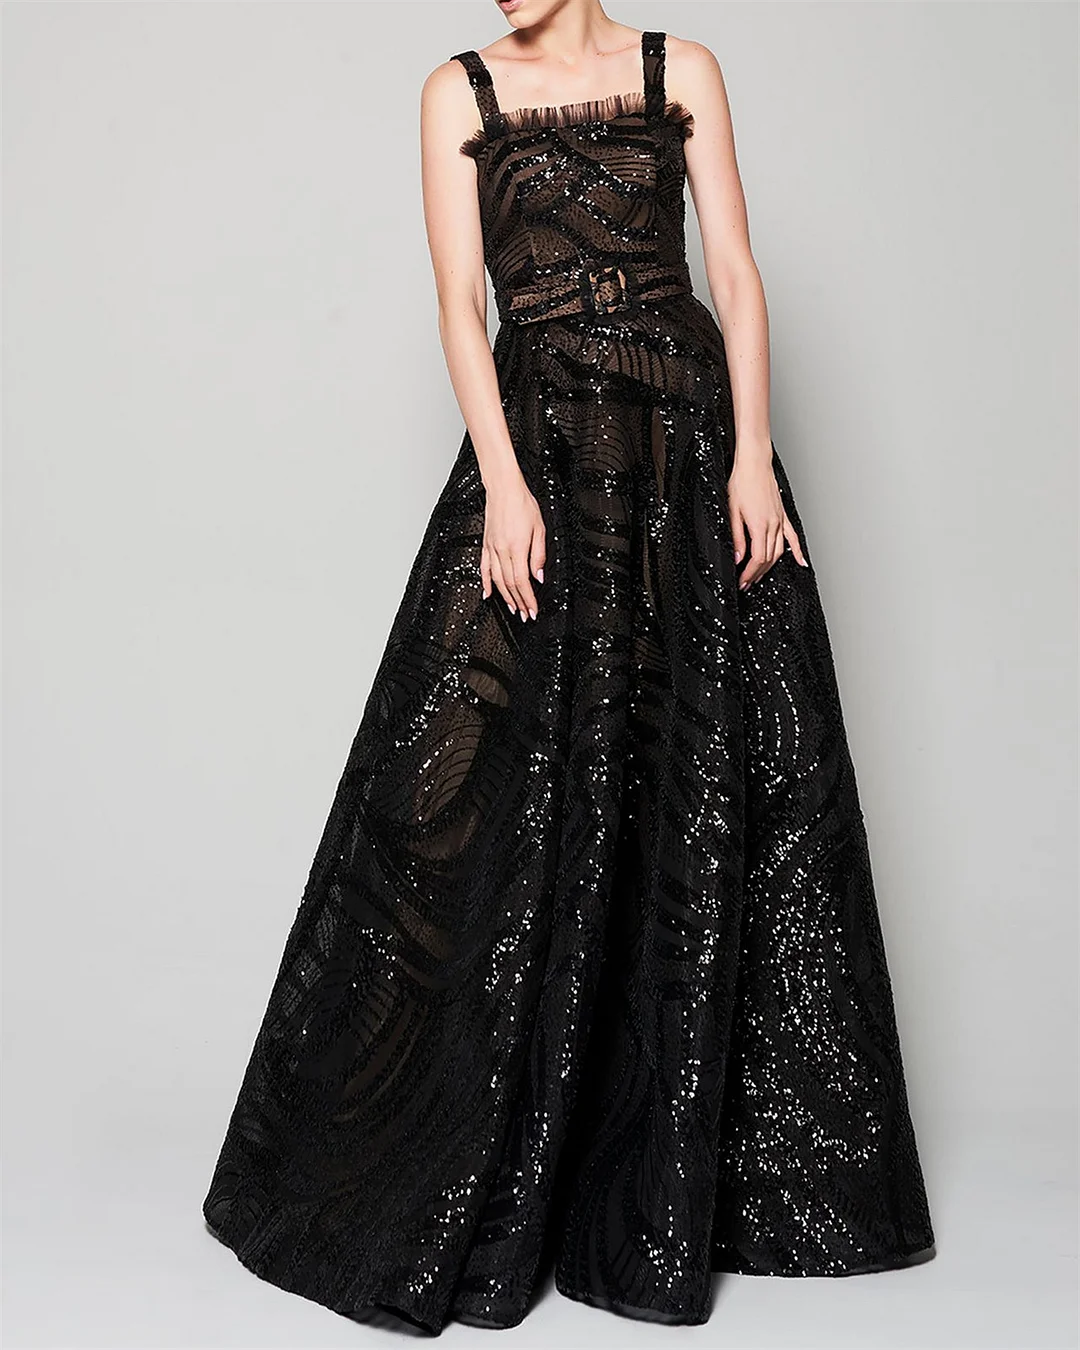 Women's Black Sequined Sleeveless Dress